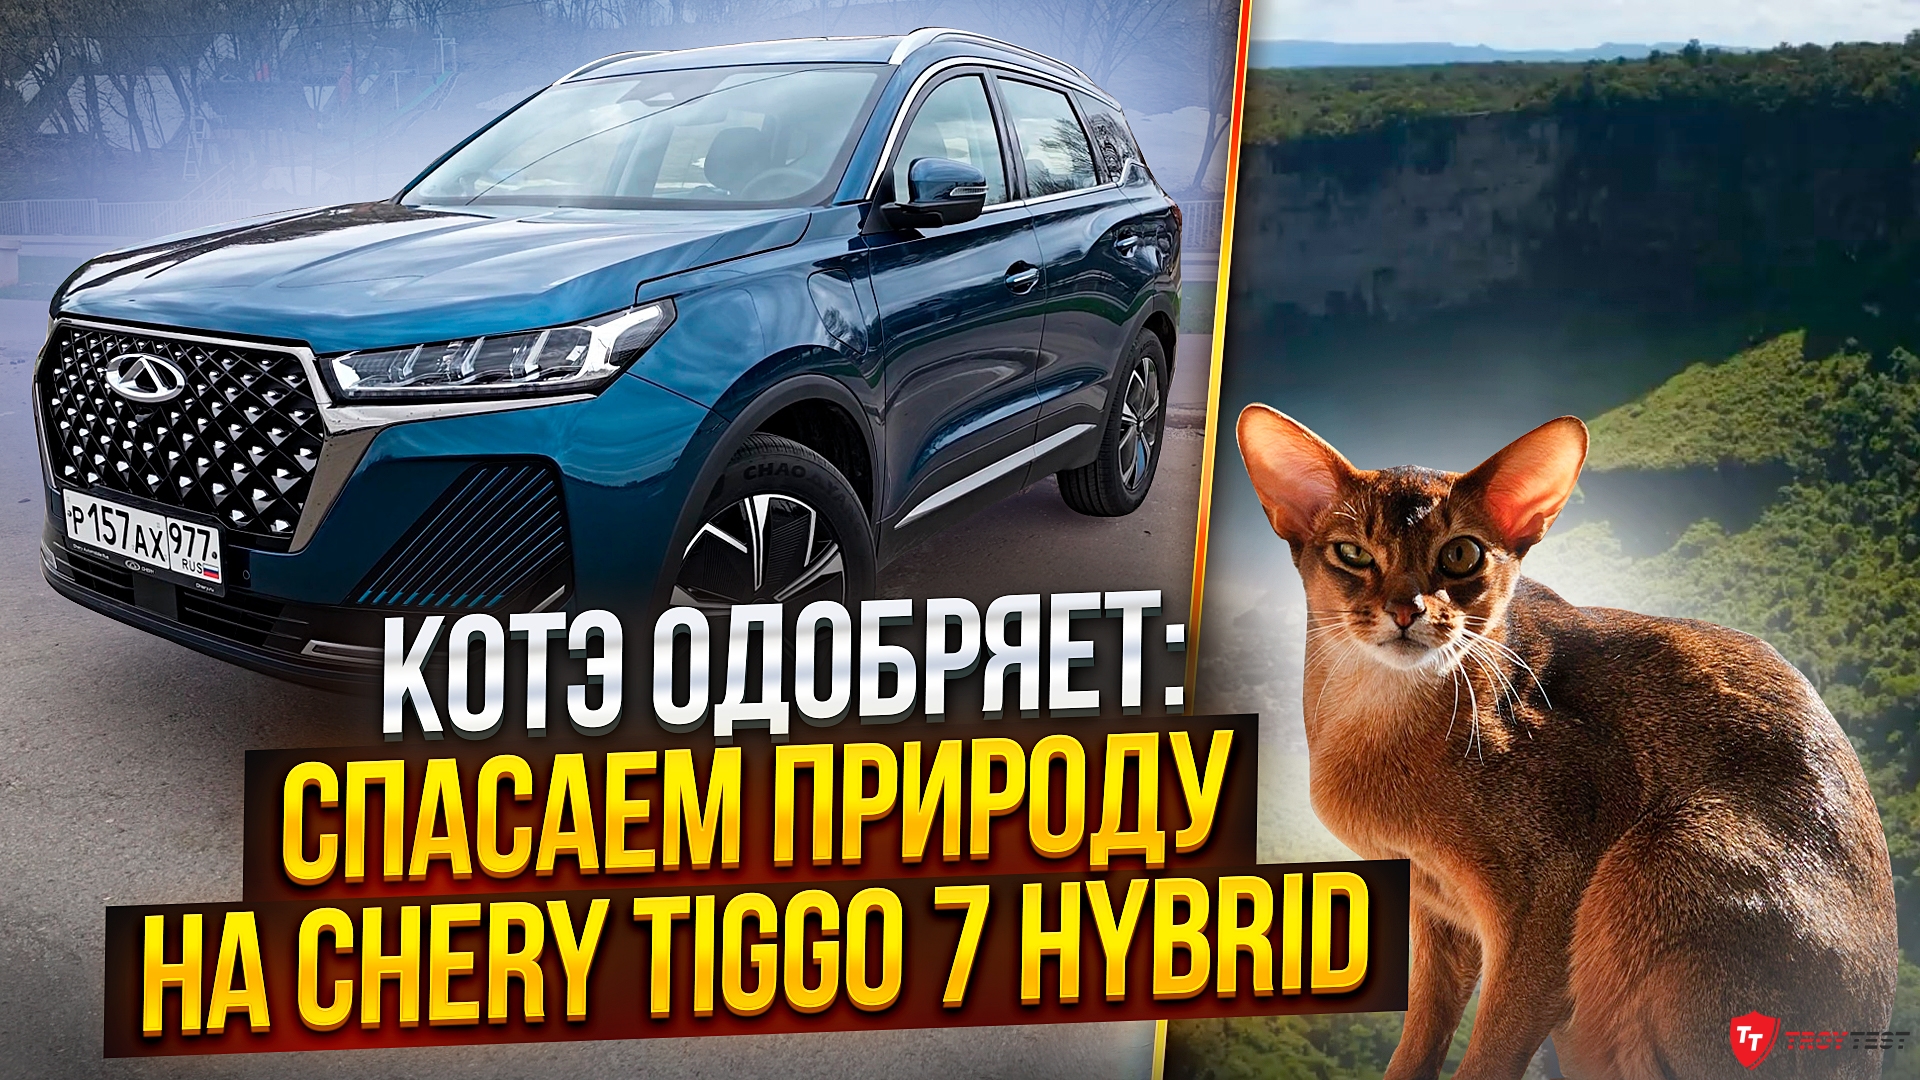 Котэ одобряет: спасаем природу на Chery Tiggo 7 Hybrid, в чем подвох?